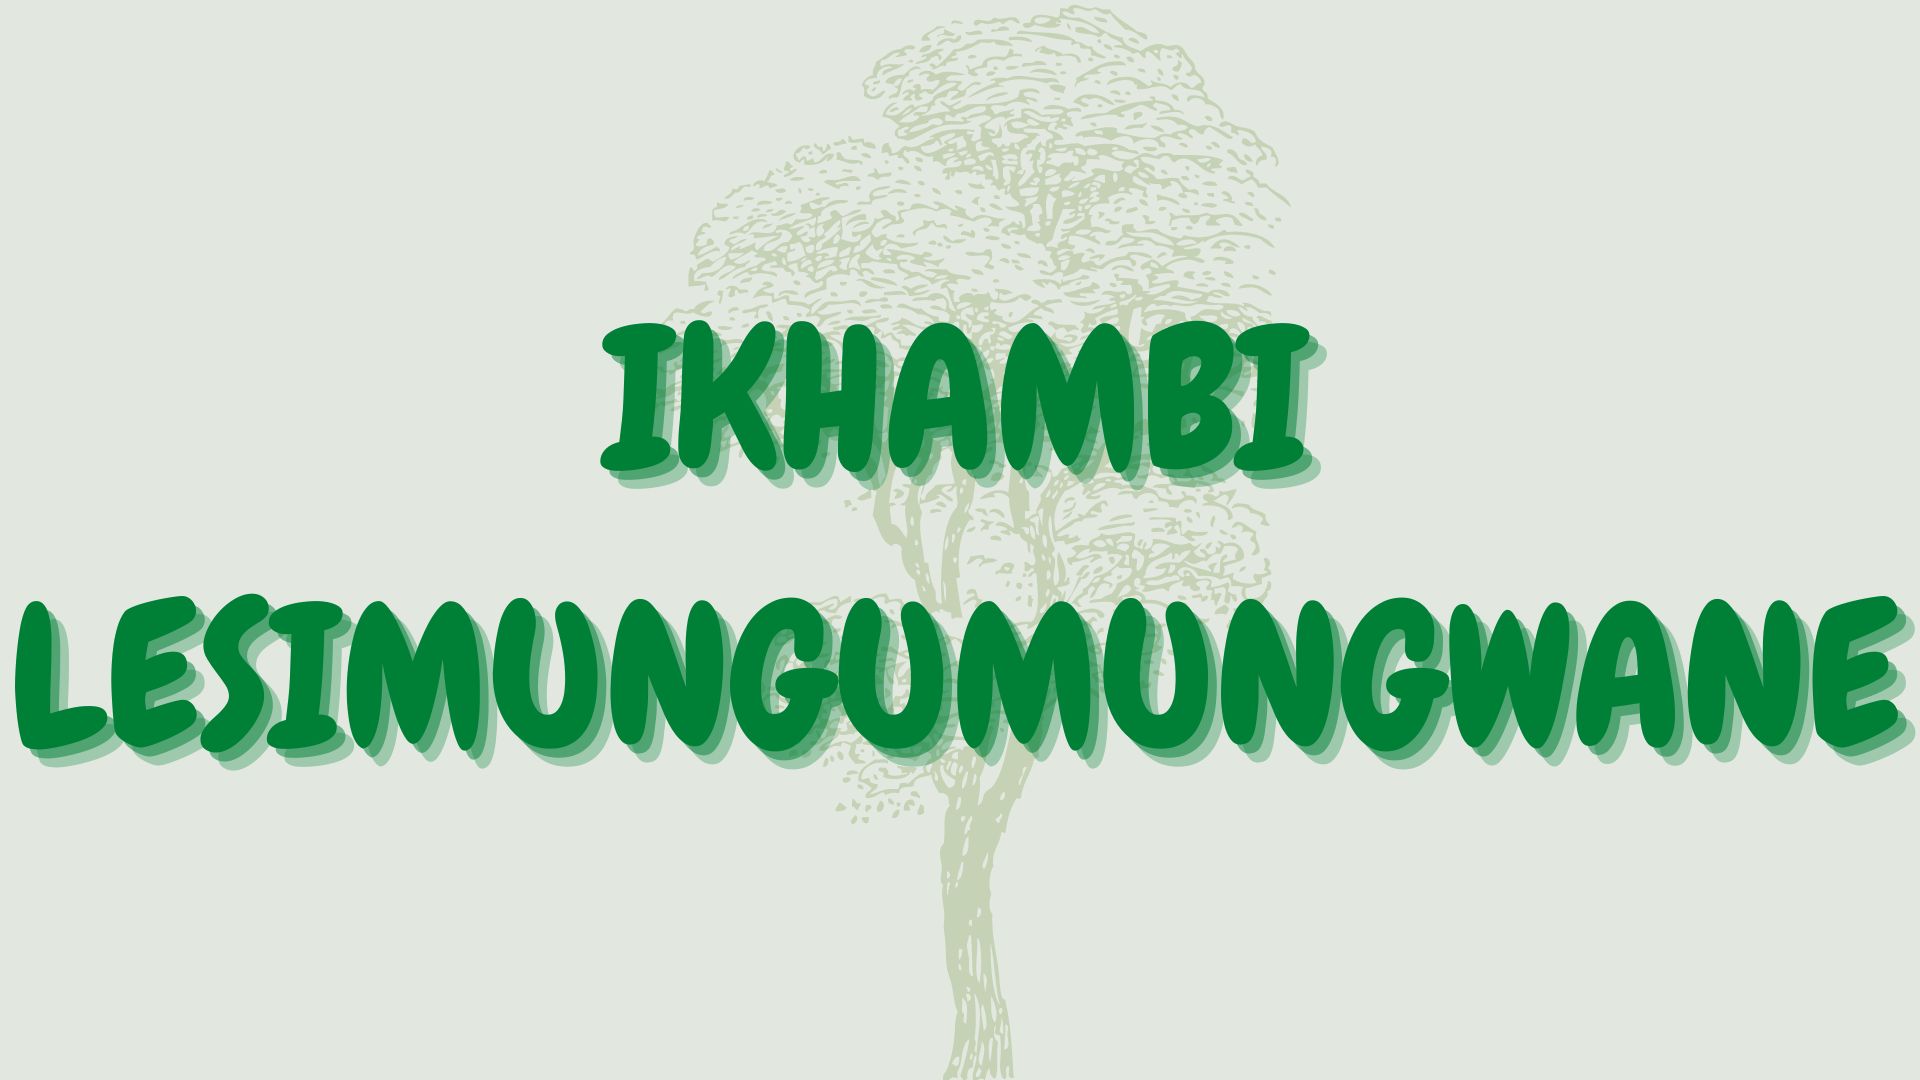 You are currently viewing Ikhambi lesimungumungwane